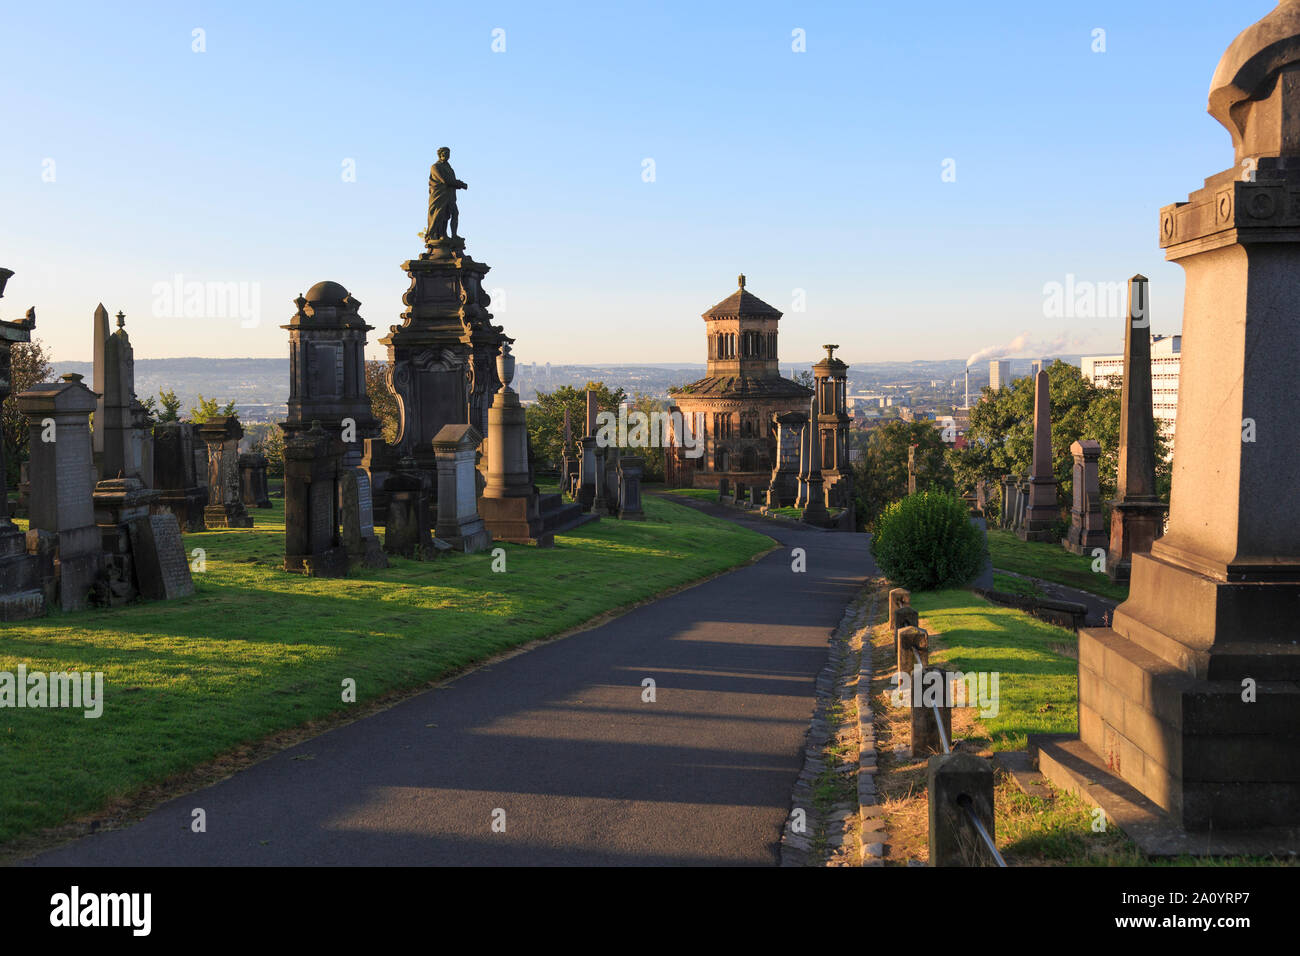 Les monuments à l'intérieur de la Nécropole de Glasgow situé à côté de la cathédrale de Glasgow. Banque D'Images